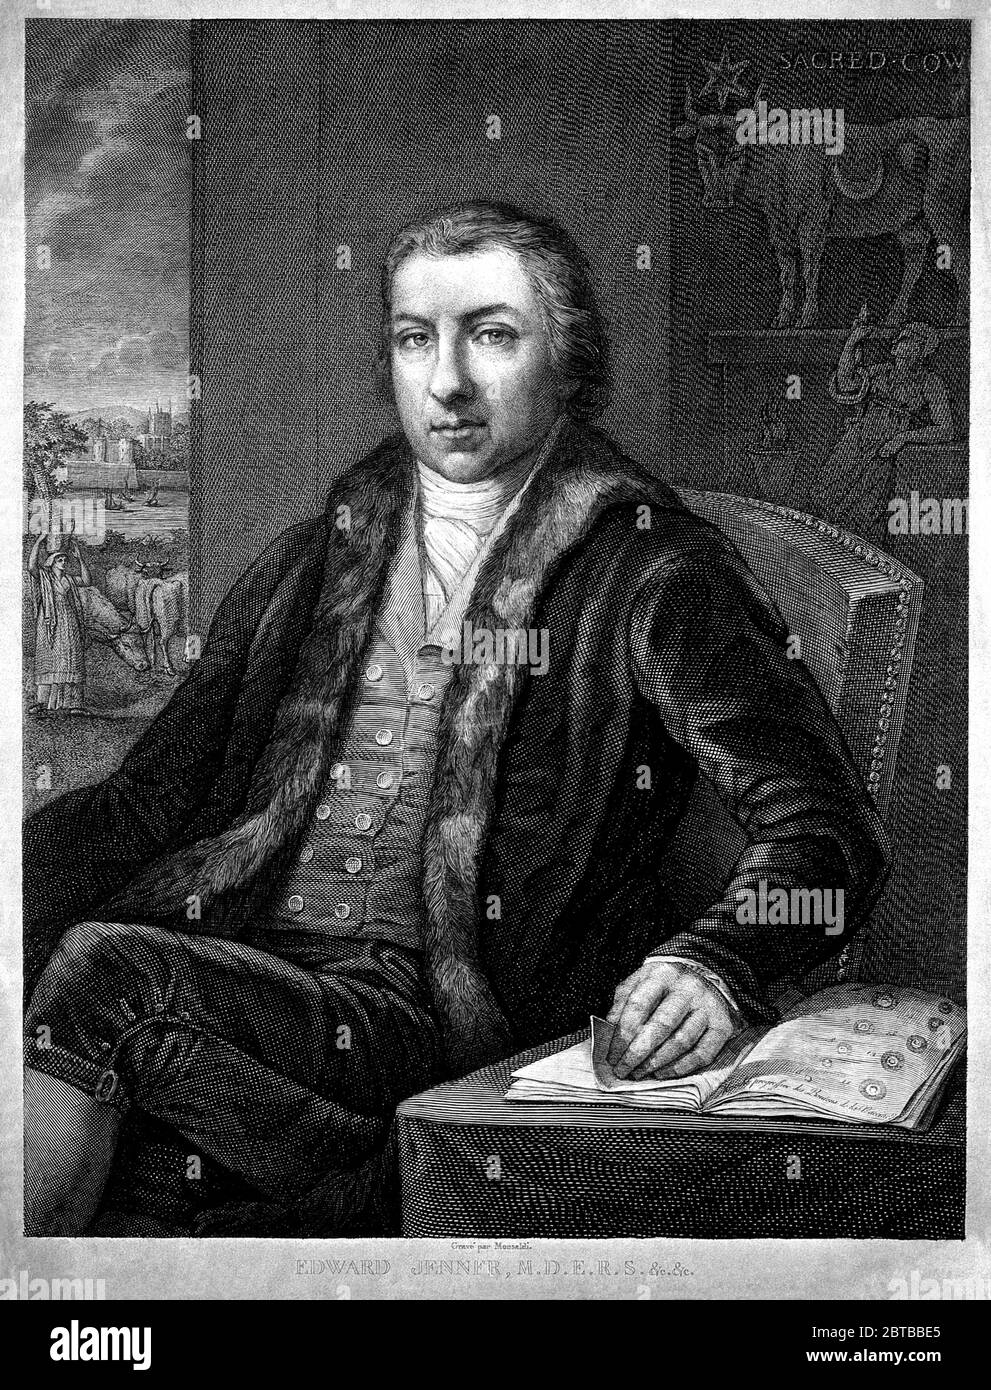 1820 ca , GREAT BRITAIN : The british physician , virologist and naturalist EDWARD JENNER ( 1749 - 1823 ), who was a contributor to development of the SMALLPOX VACCINE . Portrait by A.M. Monsaldi after J. Northcote and John Raphael Smith . - VACCINATION - VIRUS - VIROLOGO - VIROLOGIST - ANTIVAIOLOSA - ANTIVAIOLO - ANTI-VAIOLO - ANTIVAIOLOSA - VAIOLO - VACCINAZIONE - foto storiche - scienziato - scientist - portrait - ritratto - GRAND BRETAGNA  - DOTTORE - MEDICO - MEDICINA - medicine - SCIENZA - SCIENCE  - SCIENZIATO - illustrazione - illustration  ---  Archivio GBB Stock Photo